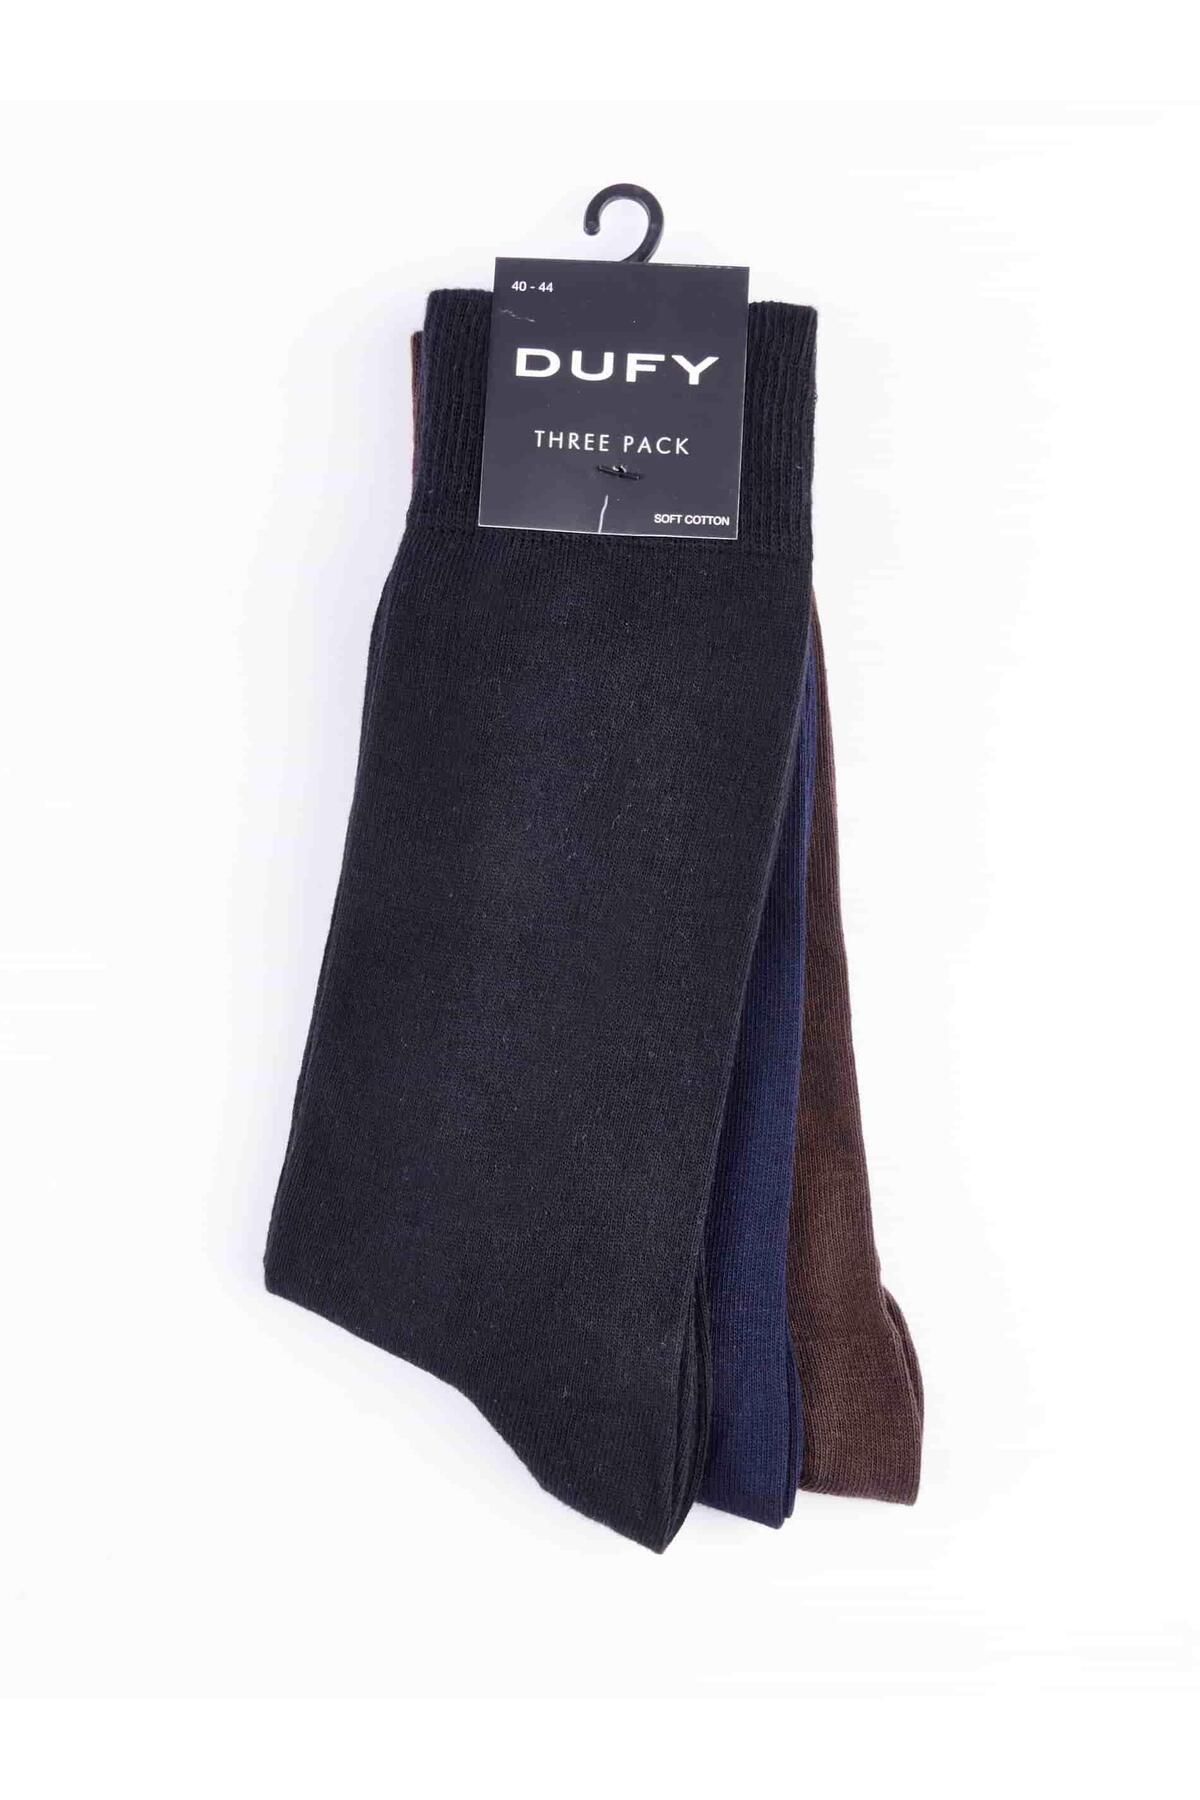 Dufy Siyah Erkek Pamuklu Çorap - 40604